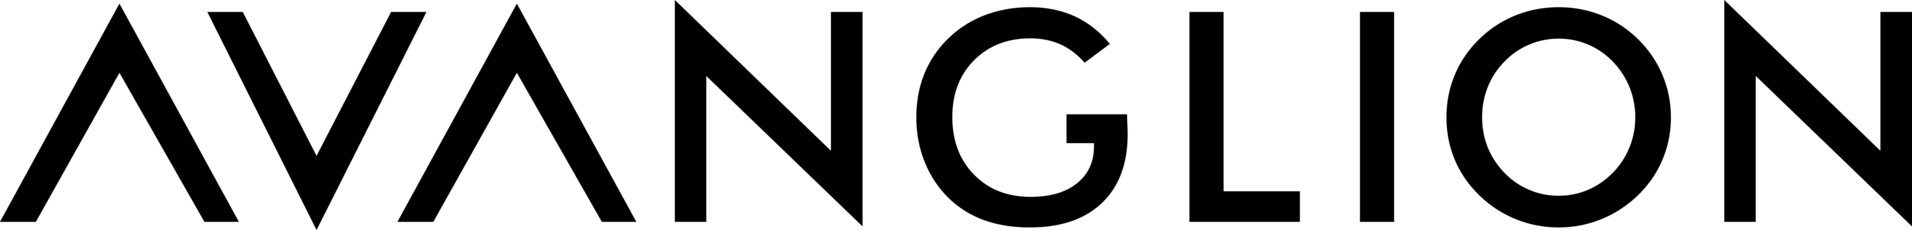 Avanglion logo